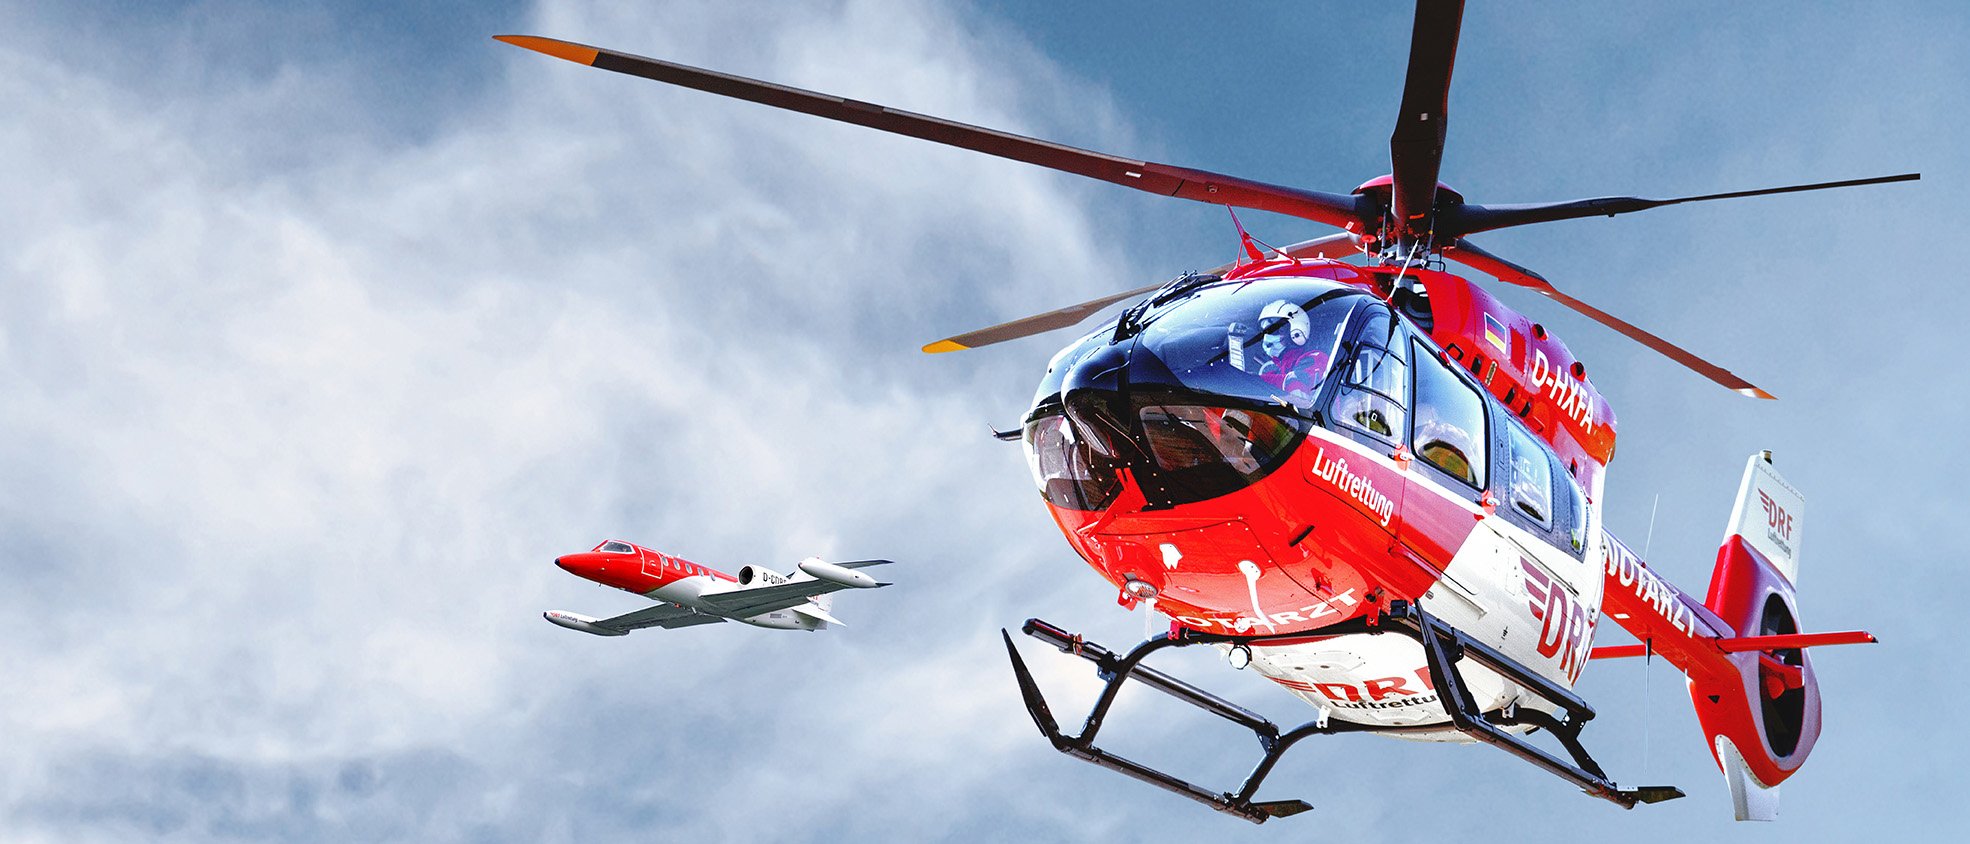 Hubschrauber und Learjet der DRF Luftrettung im Flug vor blauem Himmel